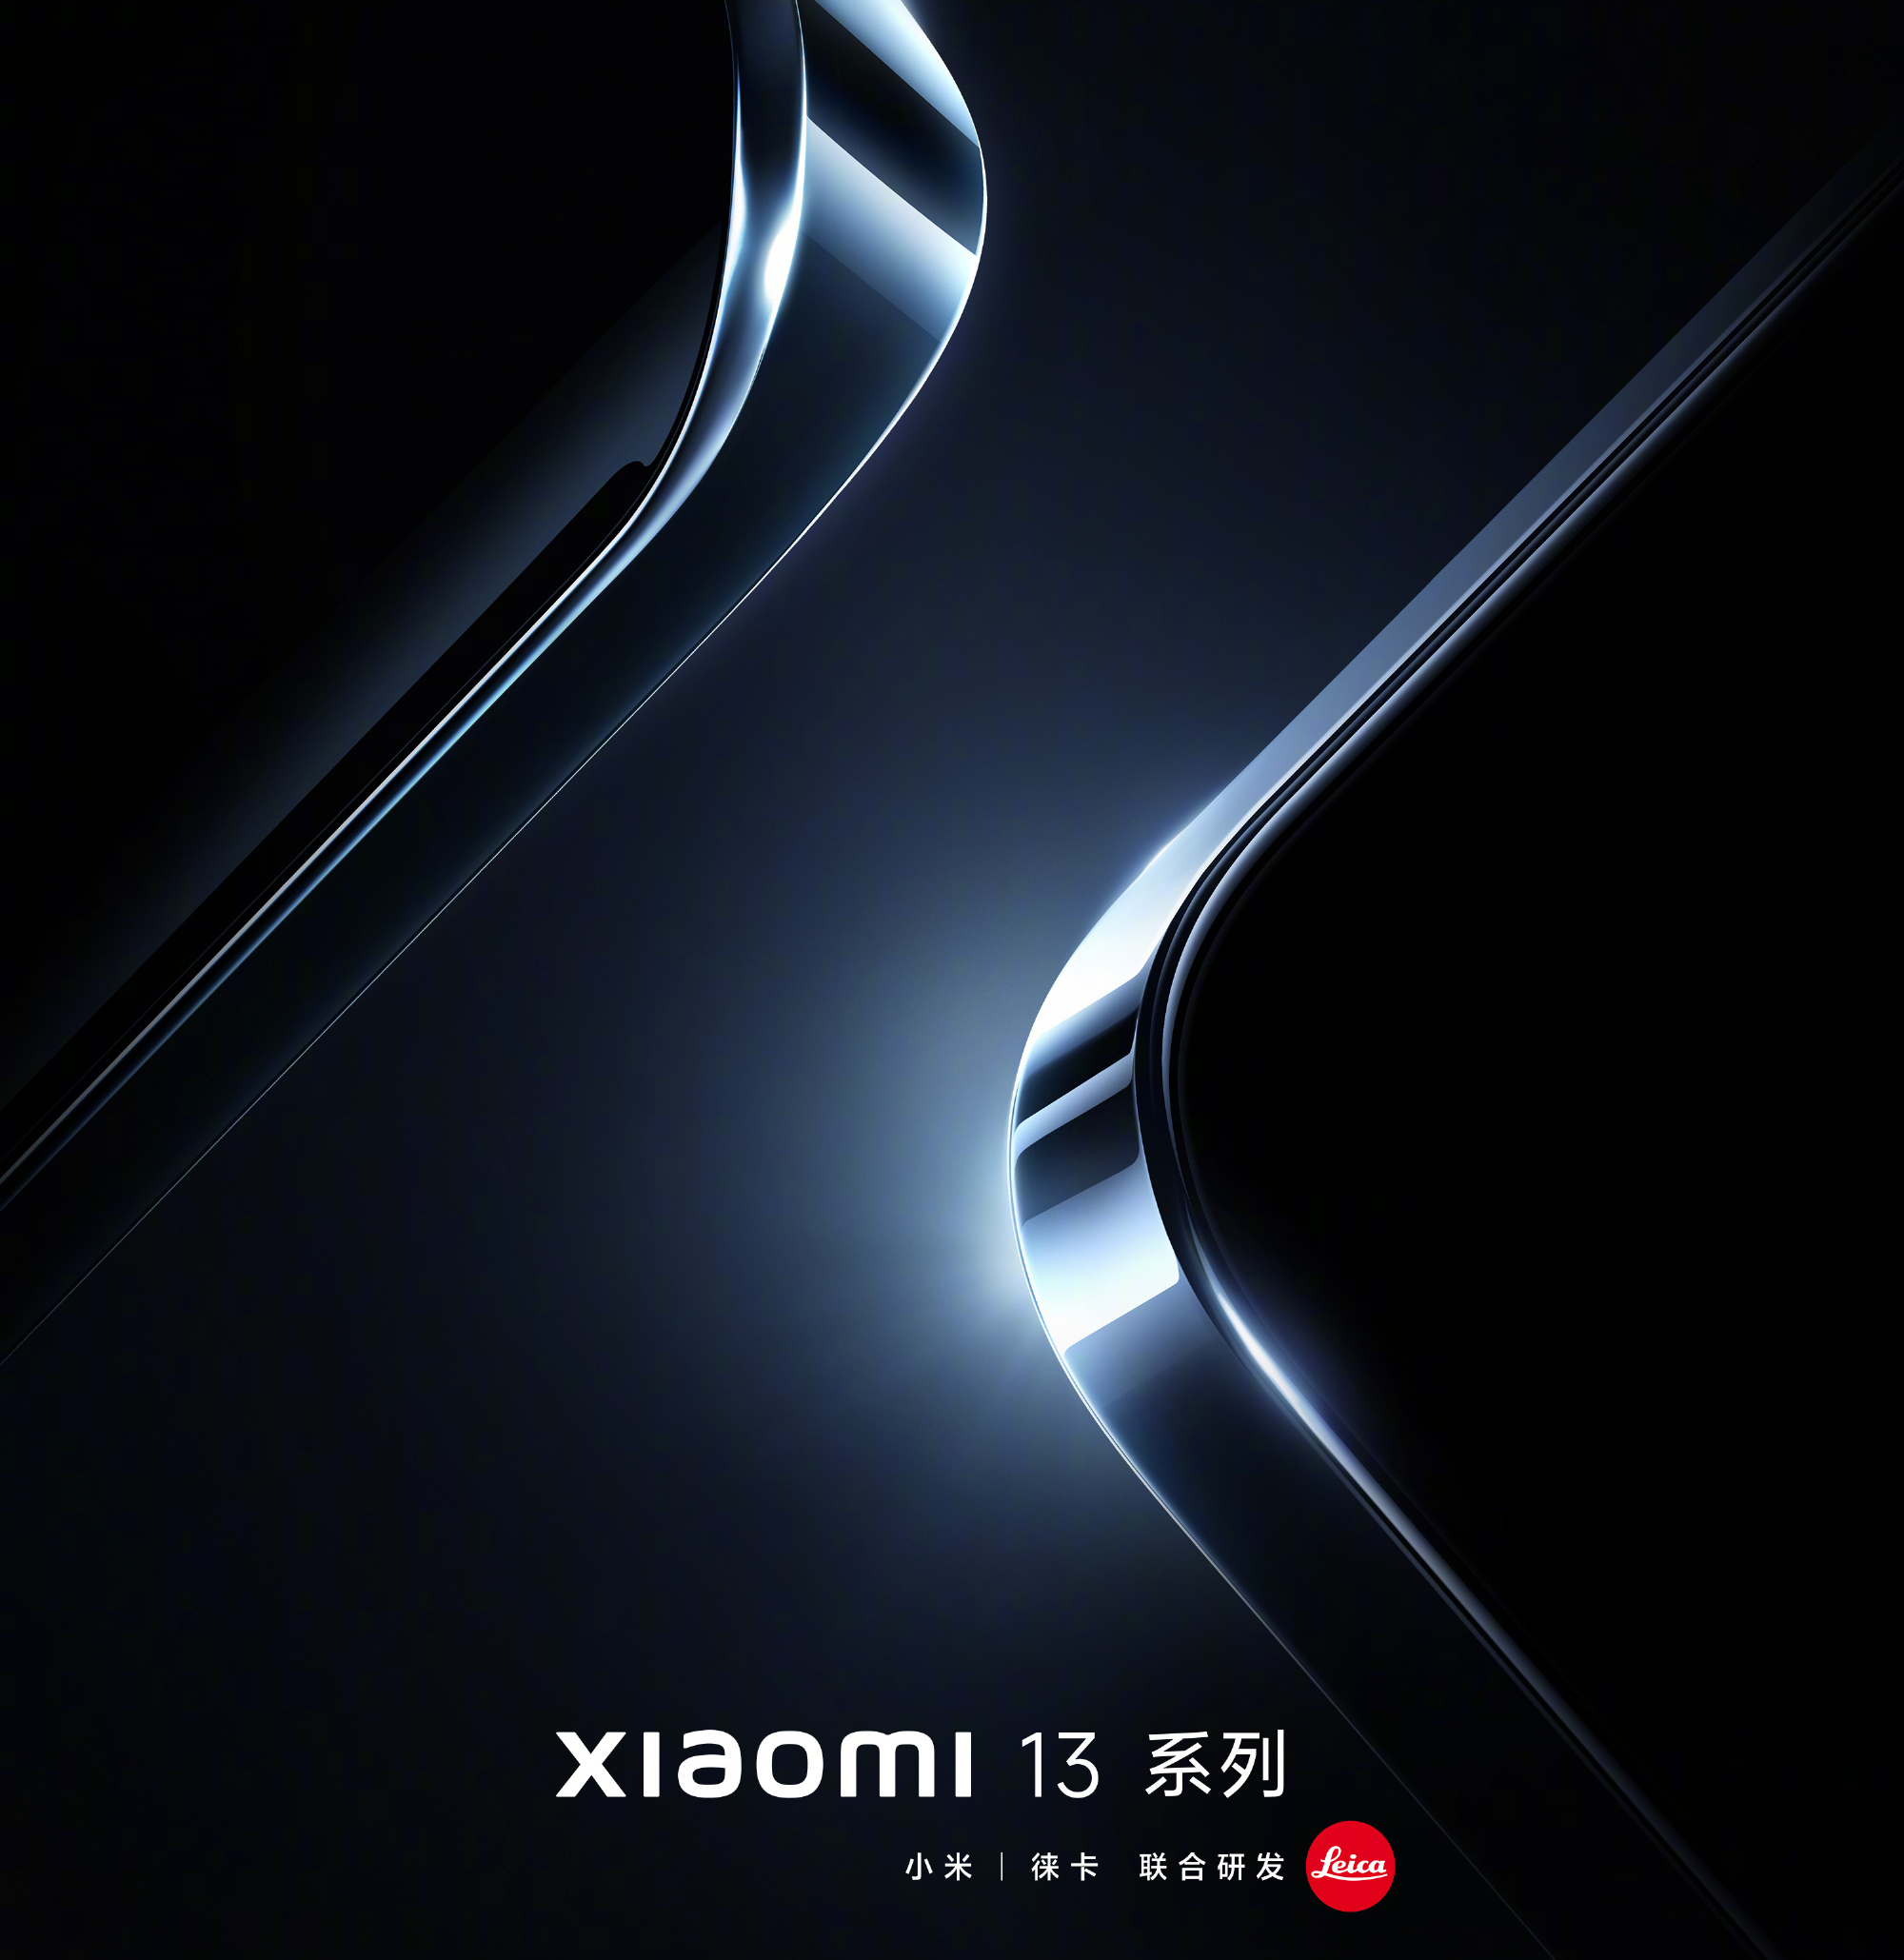 Tính năng Xiaomi 13 và phần mềm MIUI 14 mang đến cho bạn nhiều trải nghiệm mới lạ trên điện thoại của mình. Với những tính năng độc đáo và phần mềm MIUI 14 tối ưu hóa hơn, bạn sẽ có trải nghiệm tuyệt vời hơn trên điện thoại của mình. Hãy khám phá ngay để trải nghiệm các tính năng tuyệt vời này.